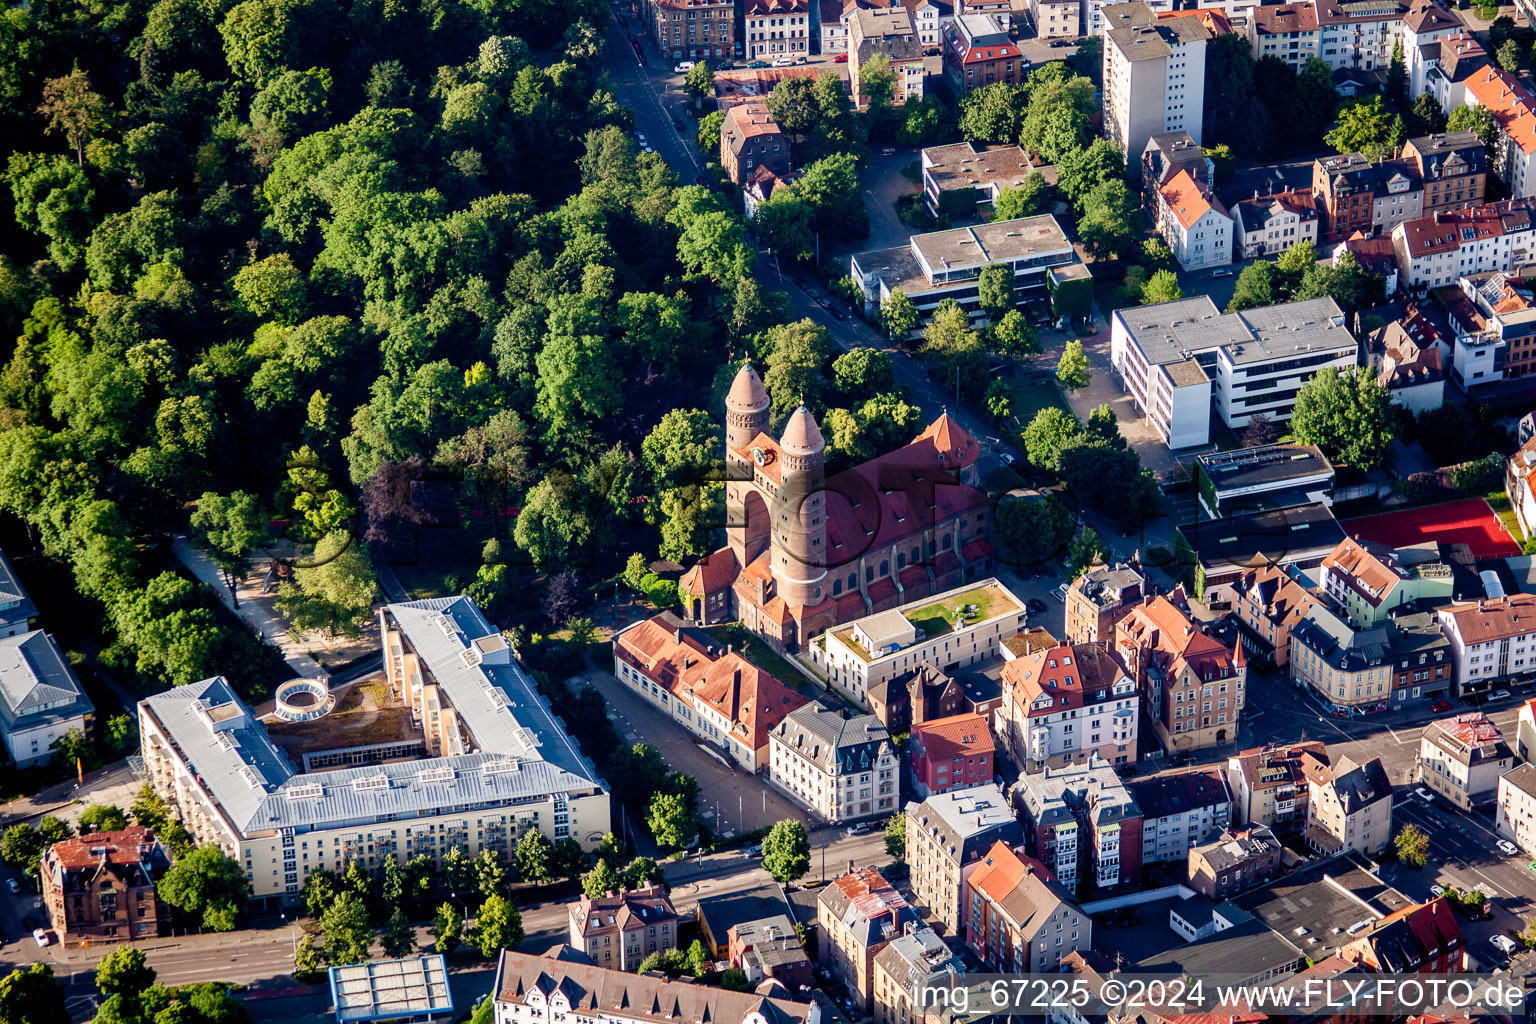 Vue aérienne de L'église de Paul à Ulm dans le département Bade-Wurtemberg, Allemagne